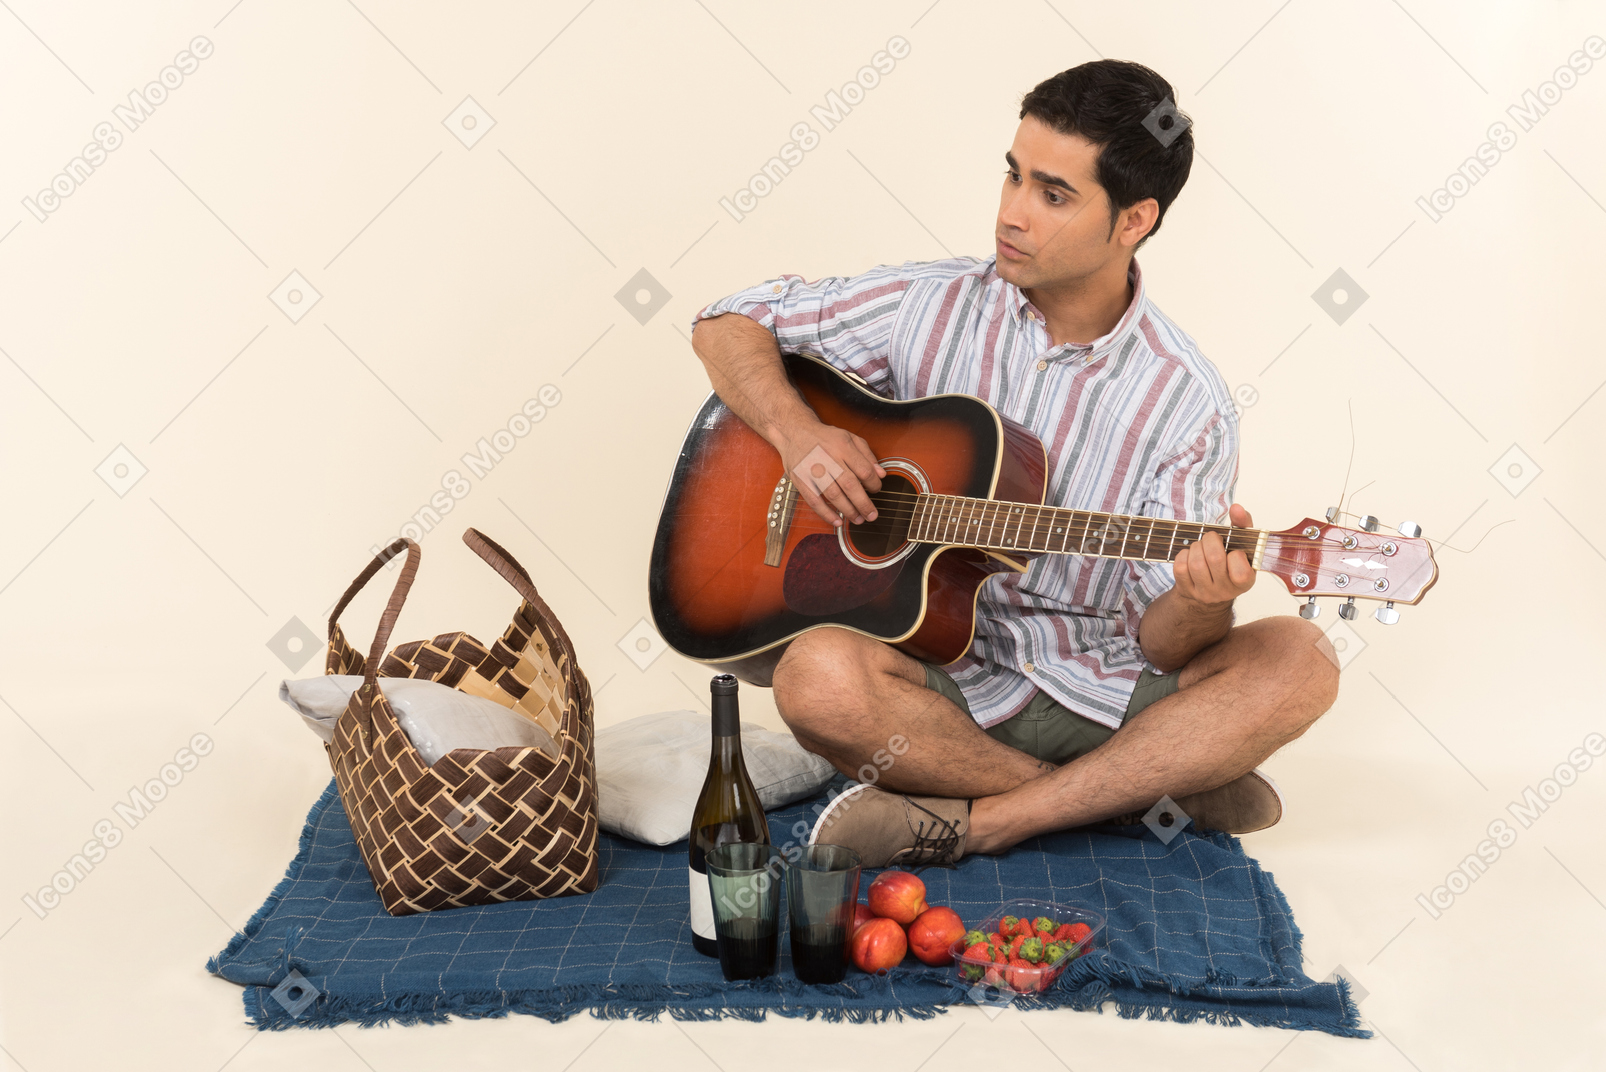 Молодой кавказский парень сидит возле корзины для пикника на одеяле и играет на гитаре